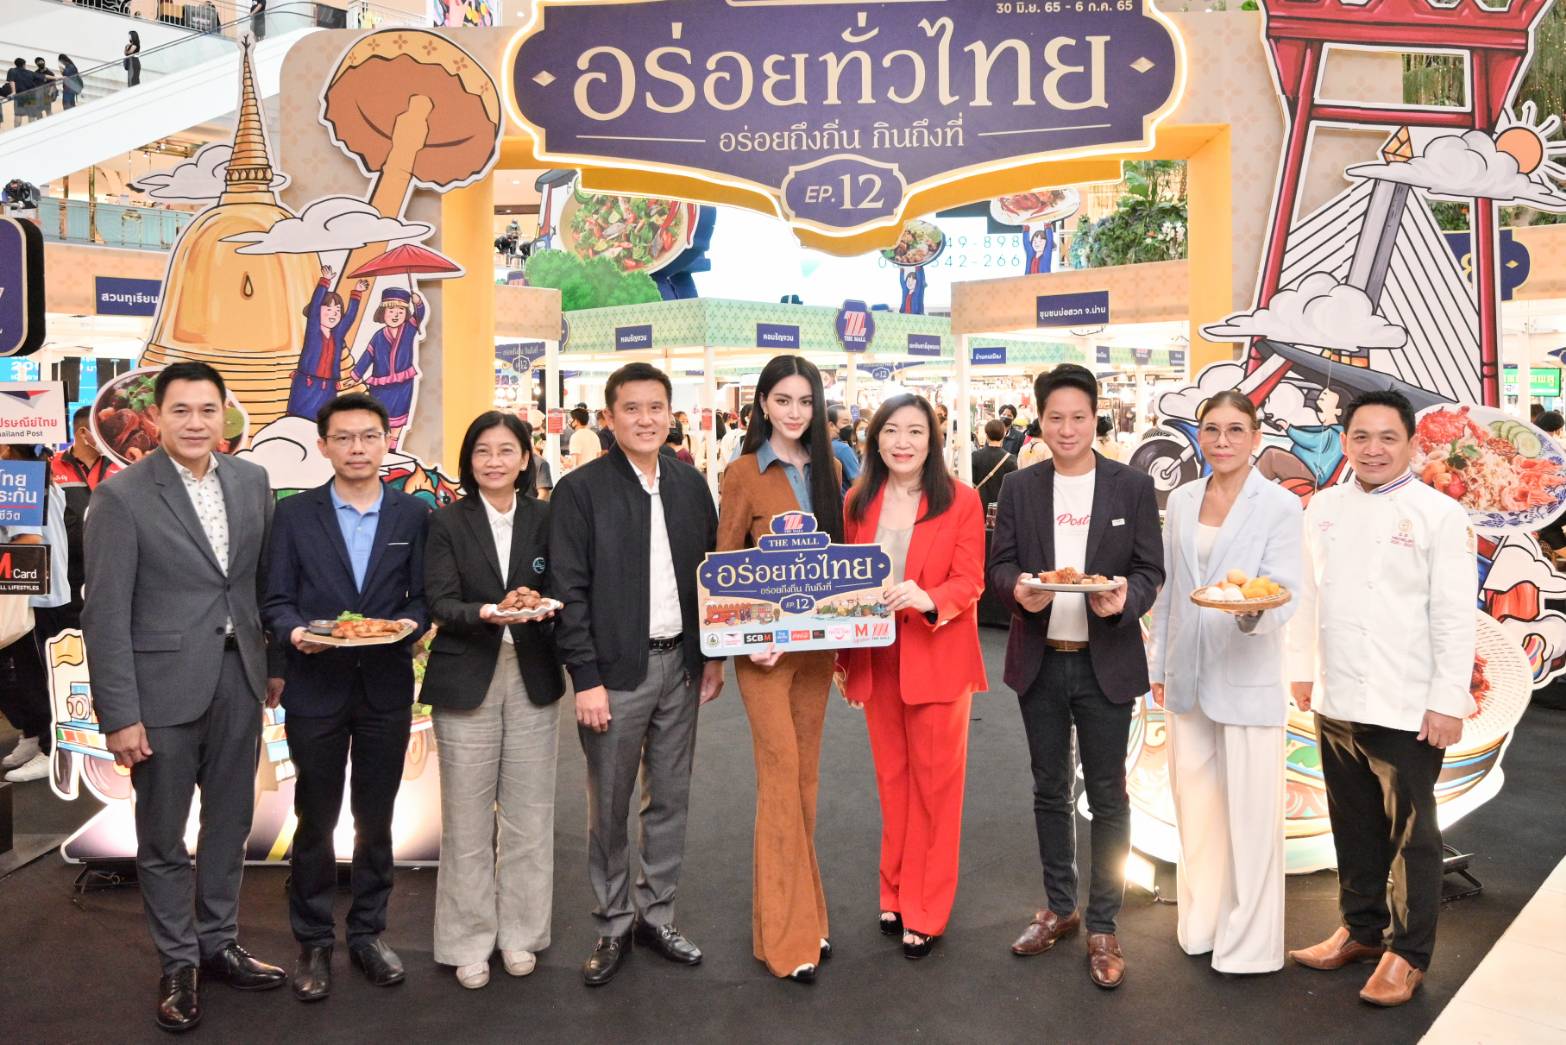 ดีอีเอส- ไปรษณีย์ไทย ยกขบวนสินค้าเด็ดจากเว็บ 'Thailandpostmart' ร่วมงาน “เดอะมอลล์อร่อยทั่วไทยฯ” ขับเคลื่อนเศรษฐกิจ หนุน SMEs สู่อีมาร์เก็ตเพลซ